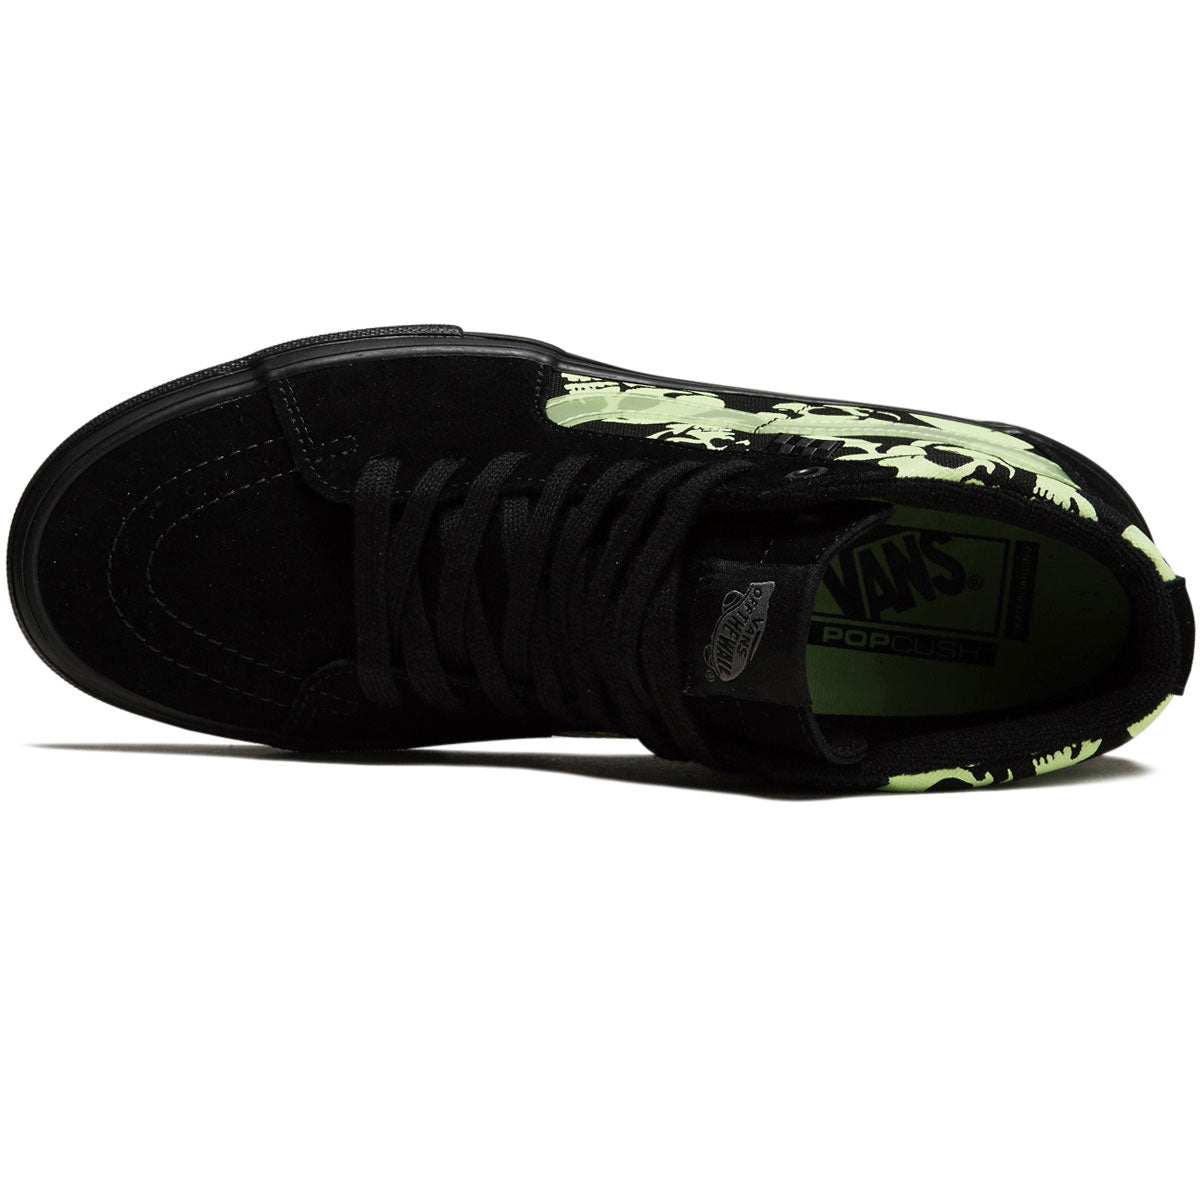 Vans Skate Sk8-hi Shoes - Glow Skulls Black/Green/Black image 3